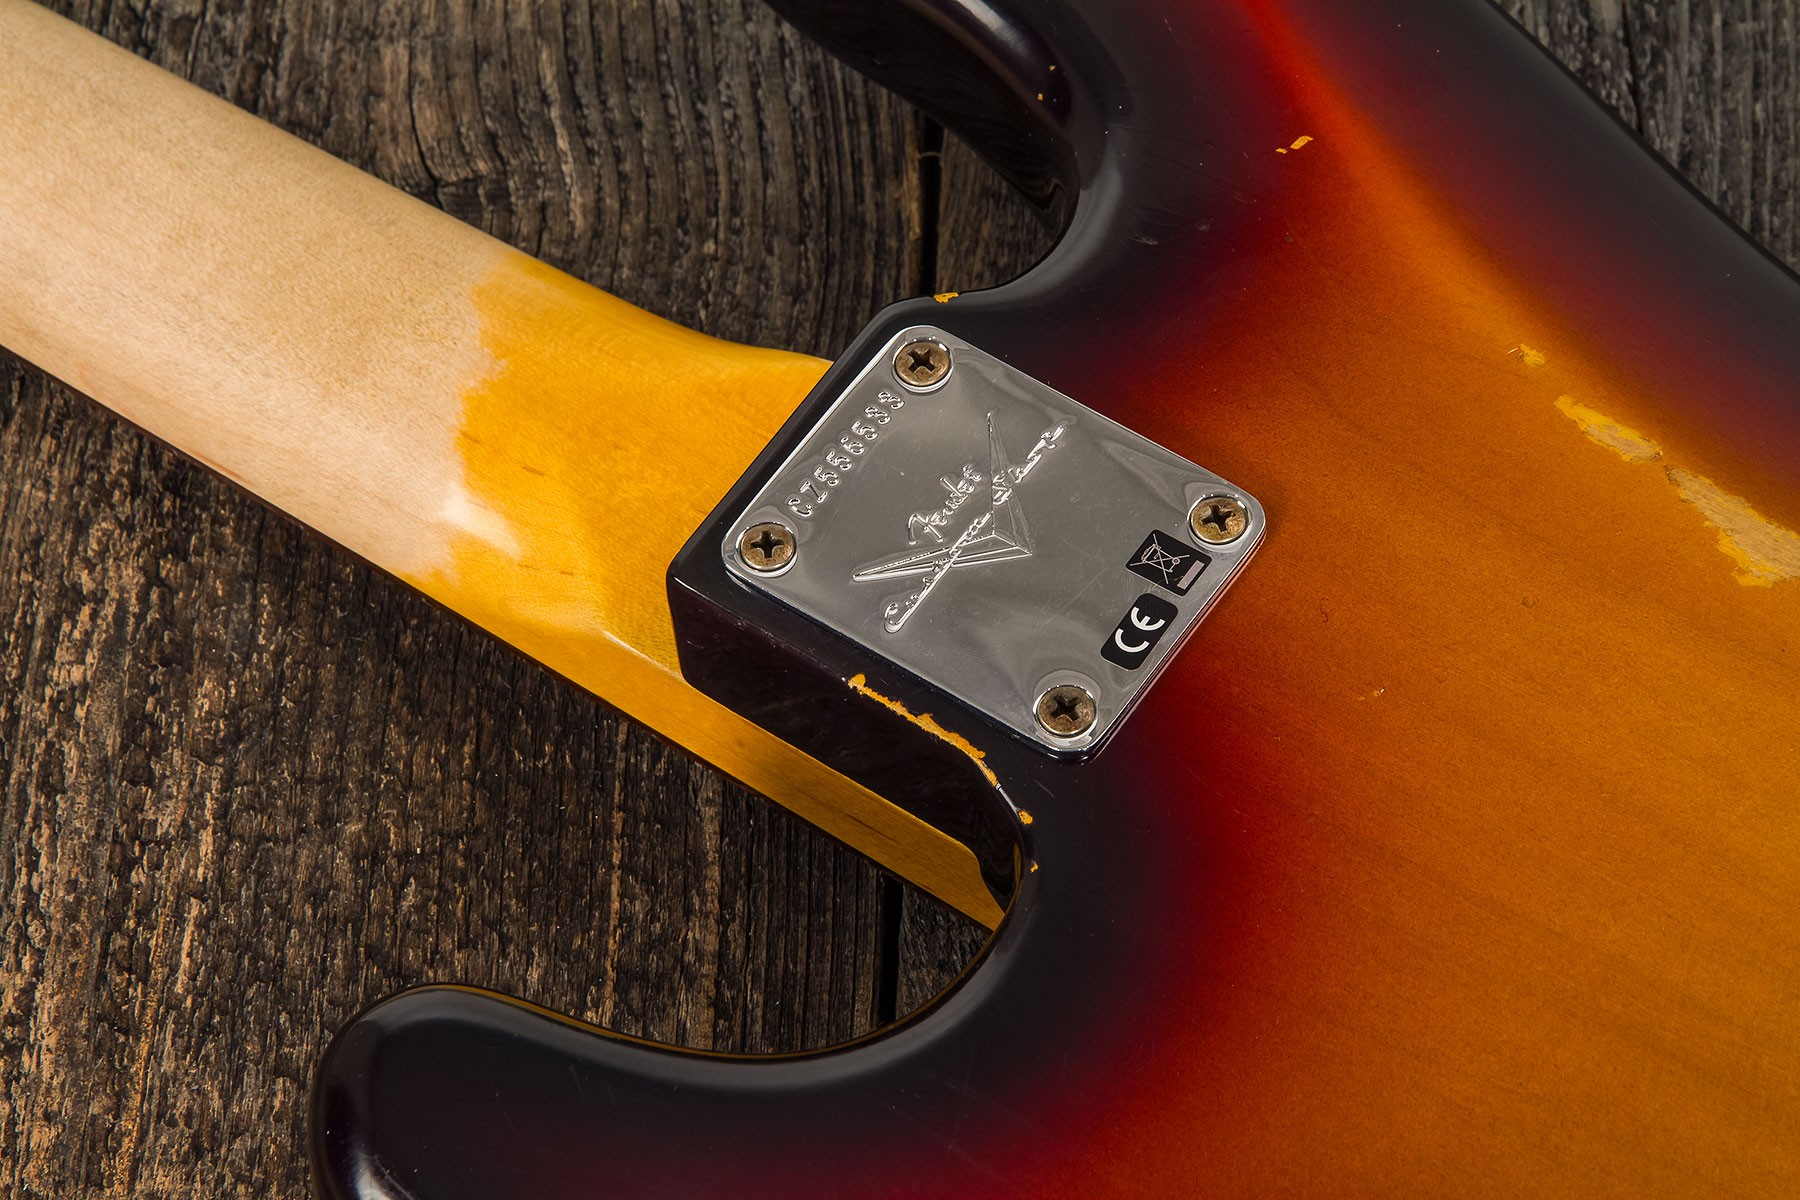 Fender Custom Shop Precision Bass 1961 Rw #cz556533 - Relic 3-color Sunburst - Solidbody E-bass - Variation 4